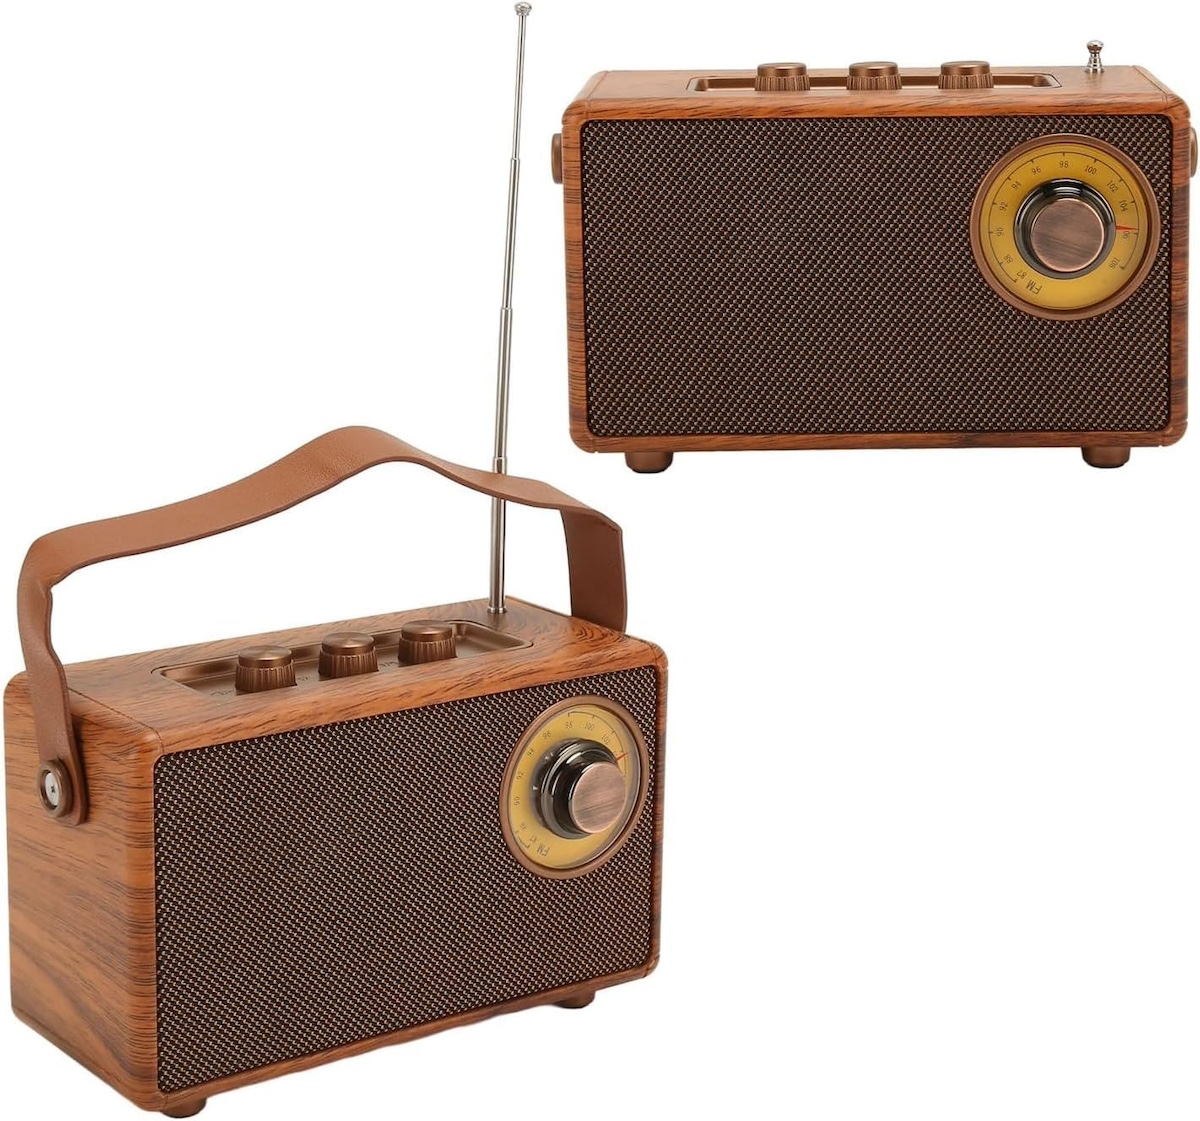 radio mini petit style rétro vintage en bois